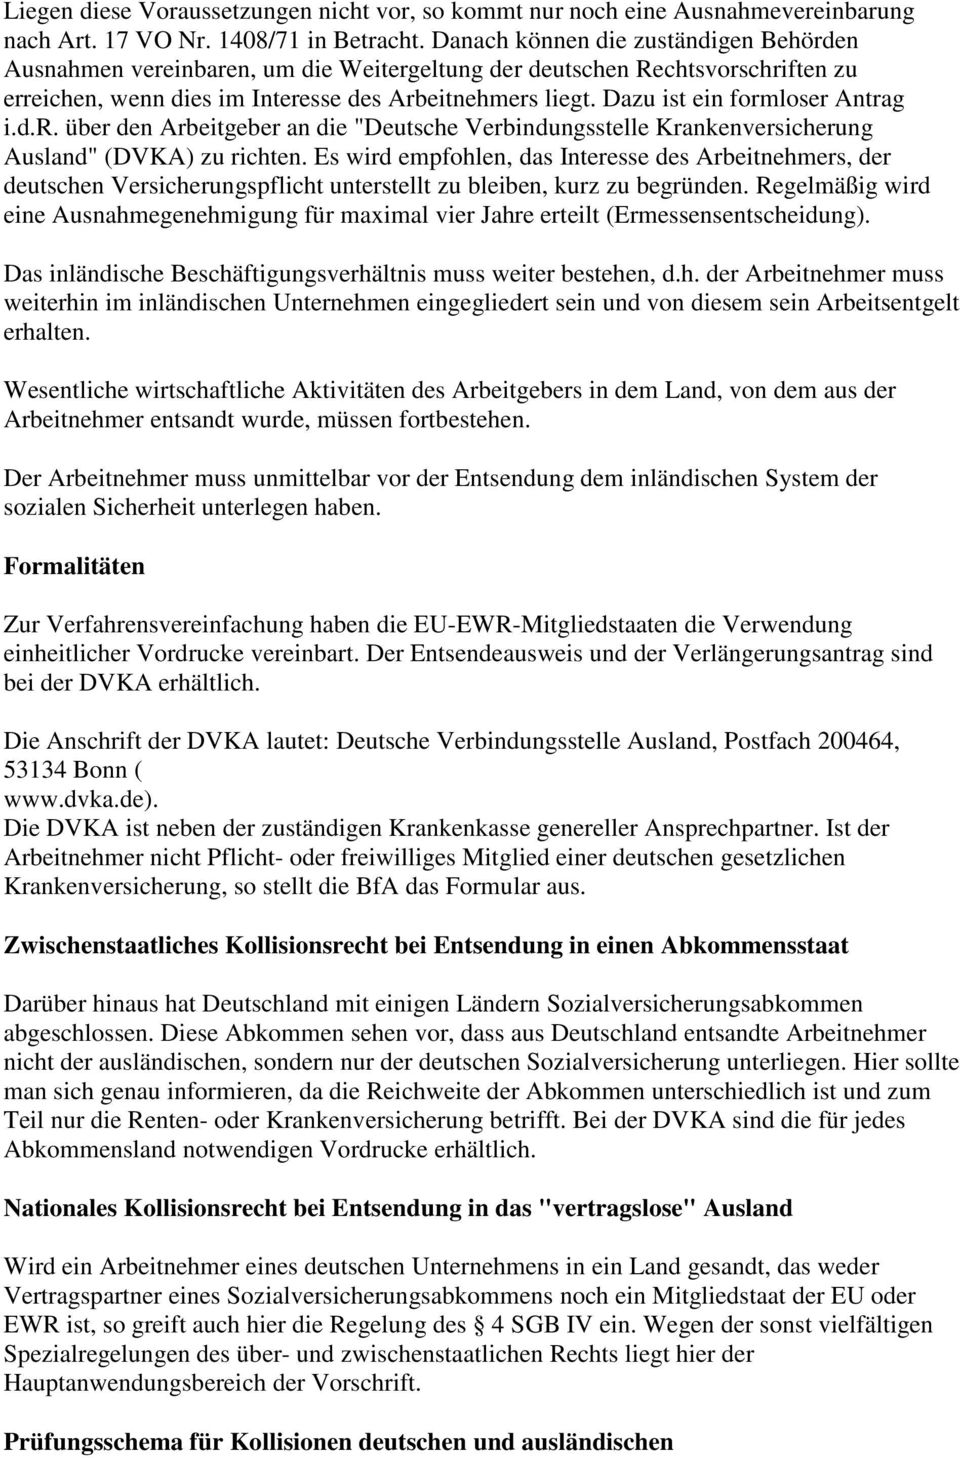 Dazu ist ein formloser Antrag i.d.r. über den Arbeitgeber an die "Deutsche Verbindungsstelle Krankenversicherung Ausland" (DVKA) zu richten.